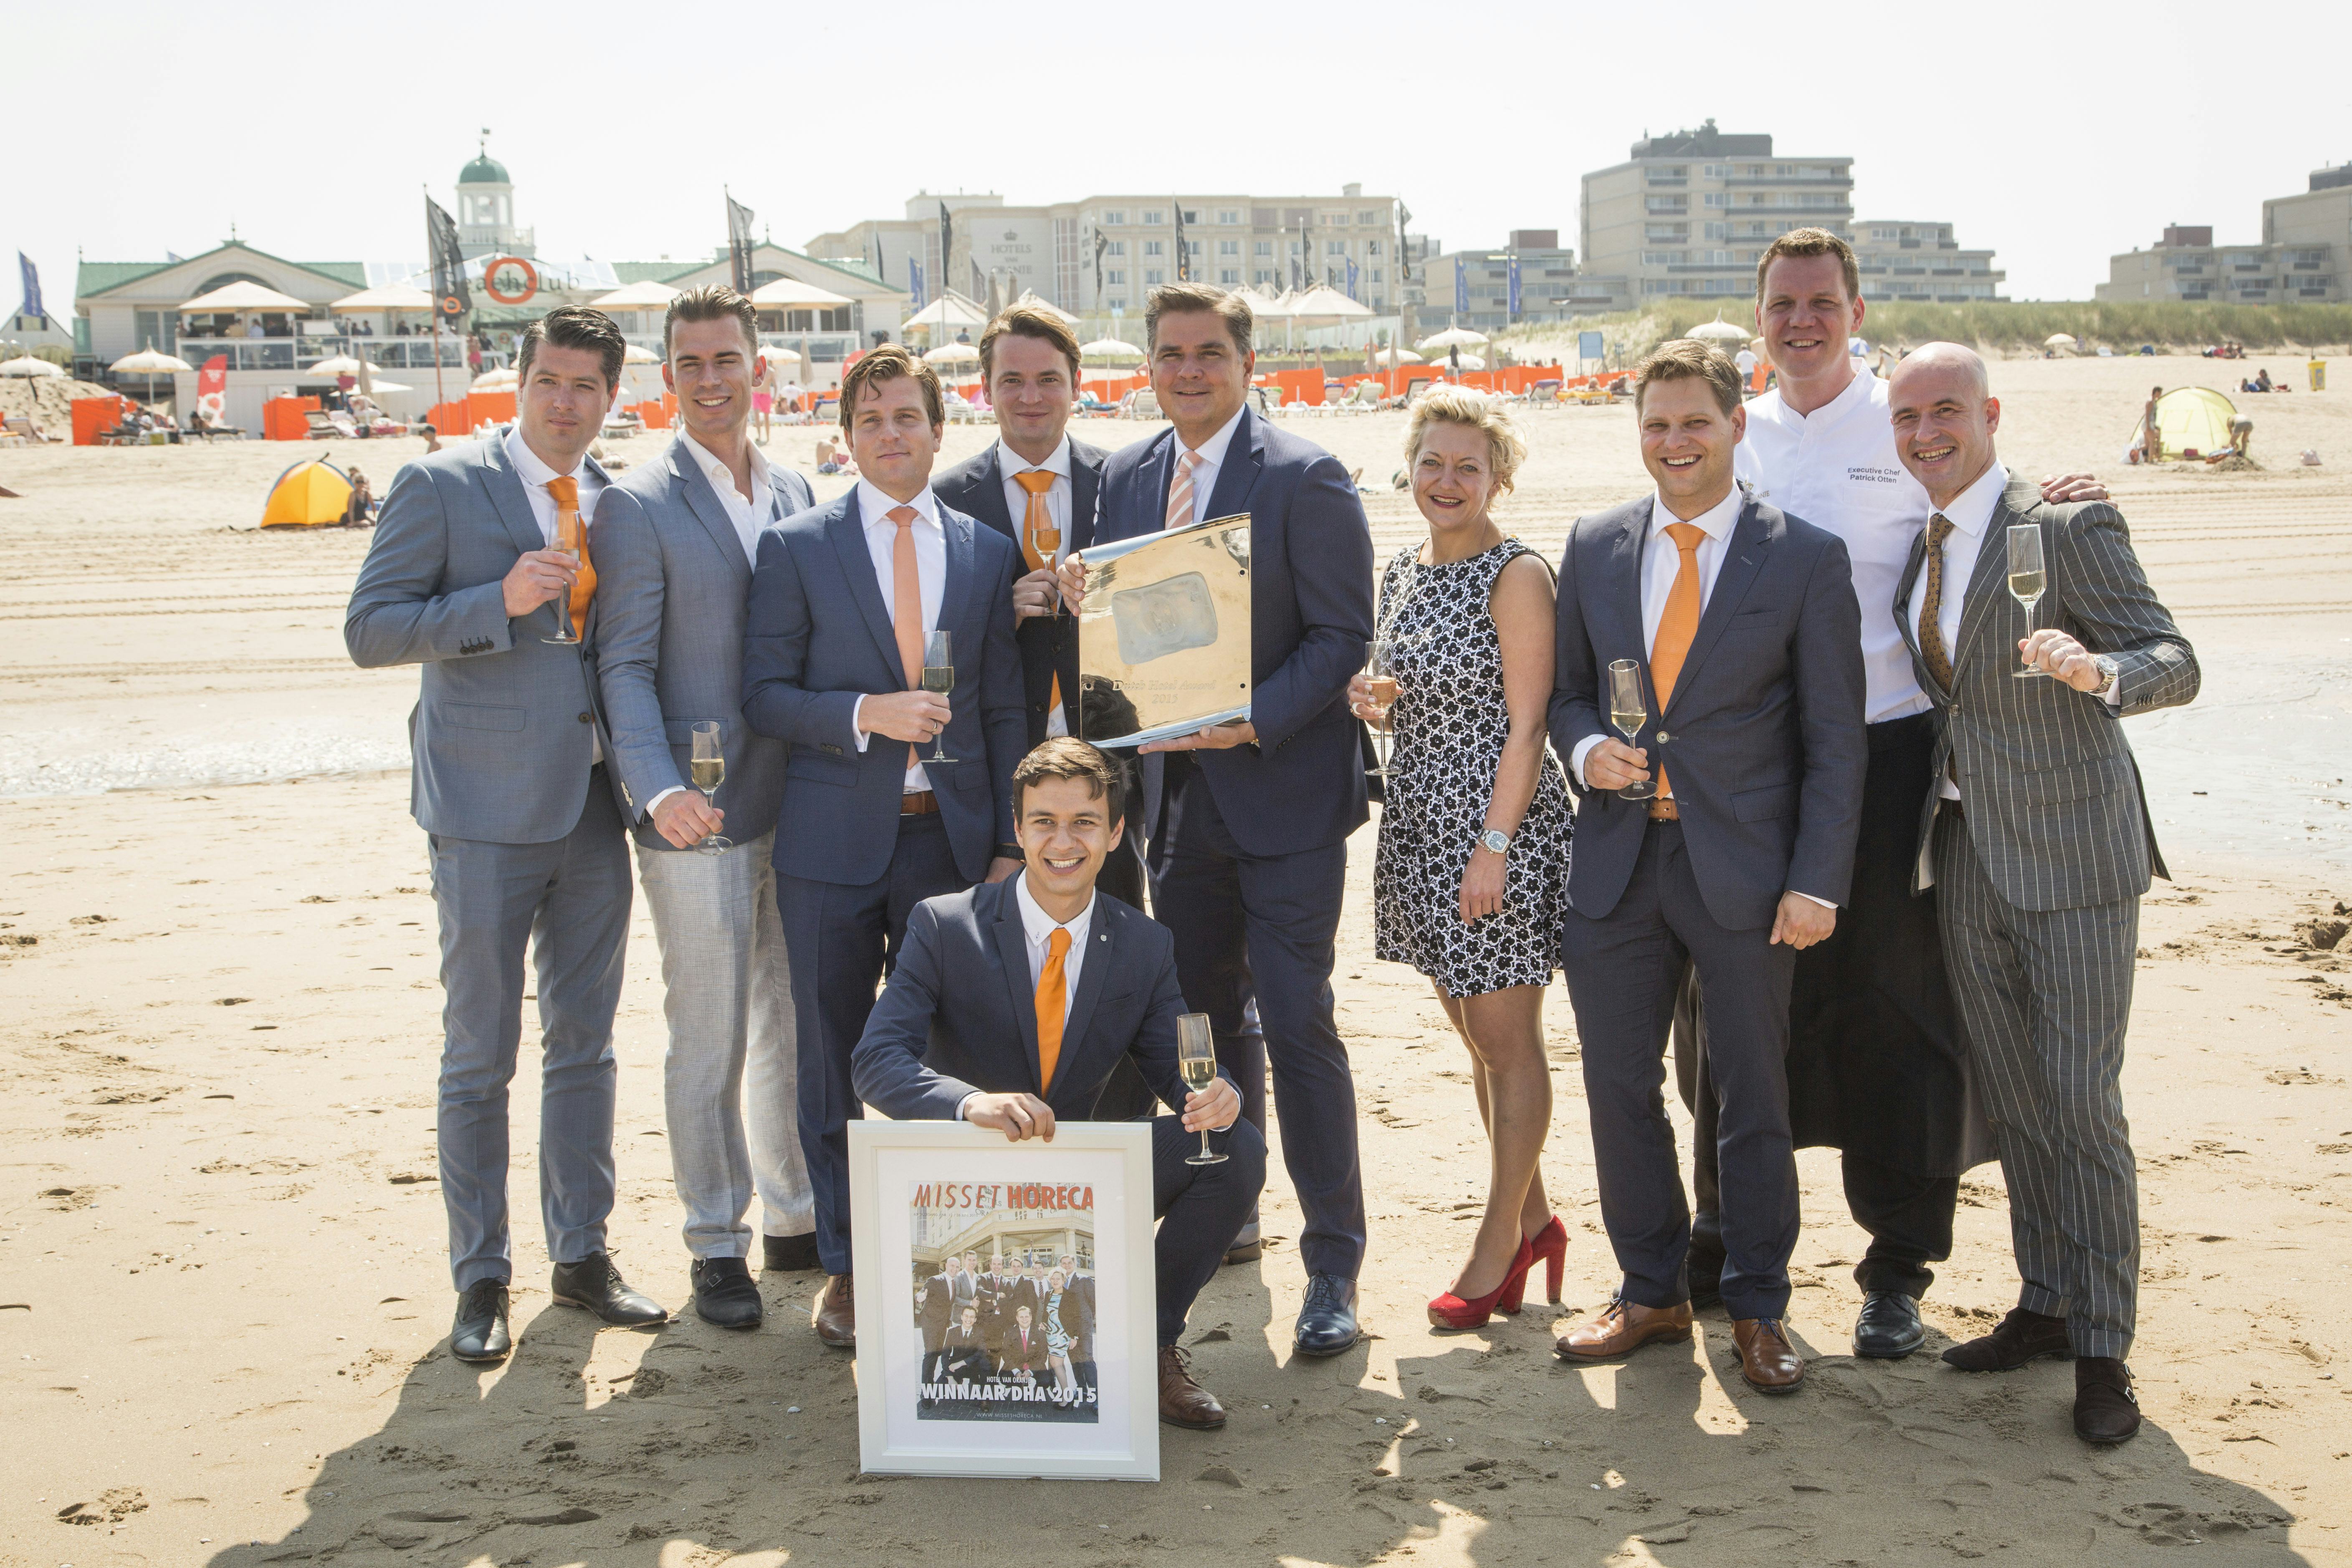 Deelnemers: 'open inschrijving Dutch Hotel Award biedt kansen'